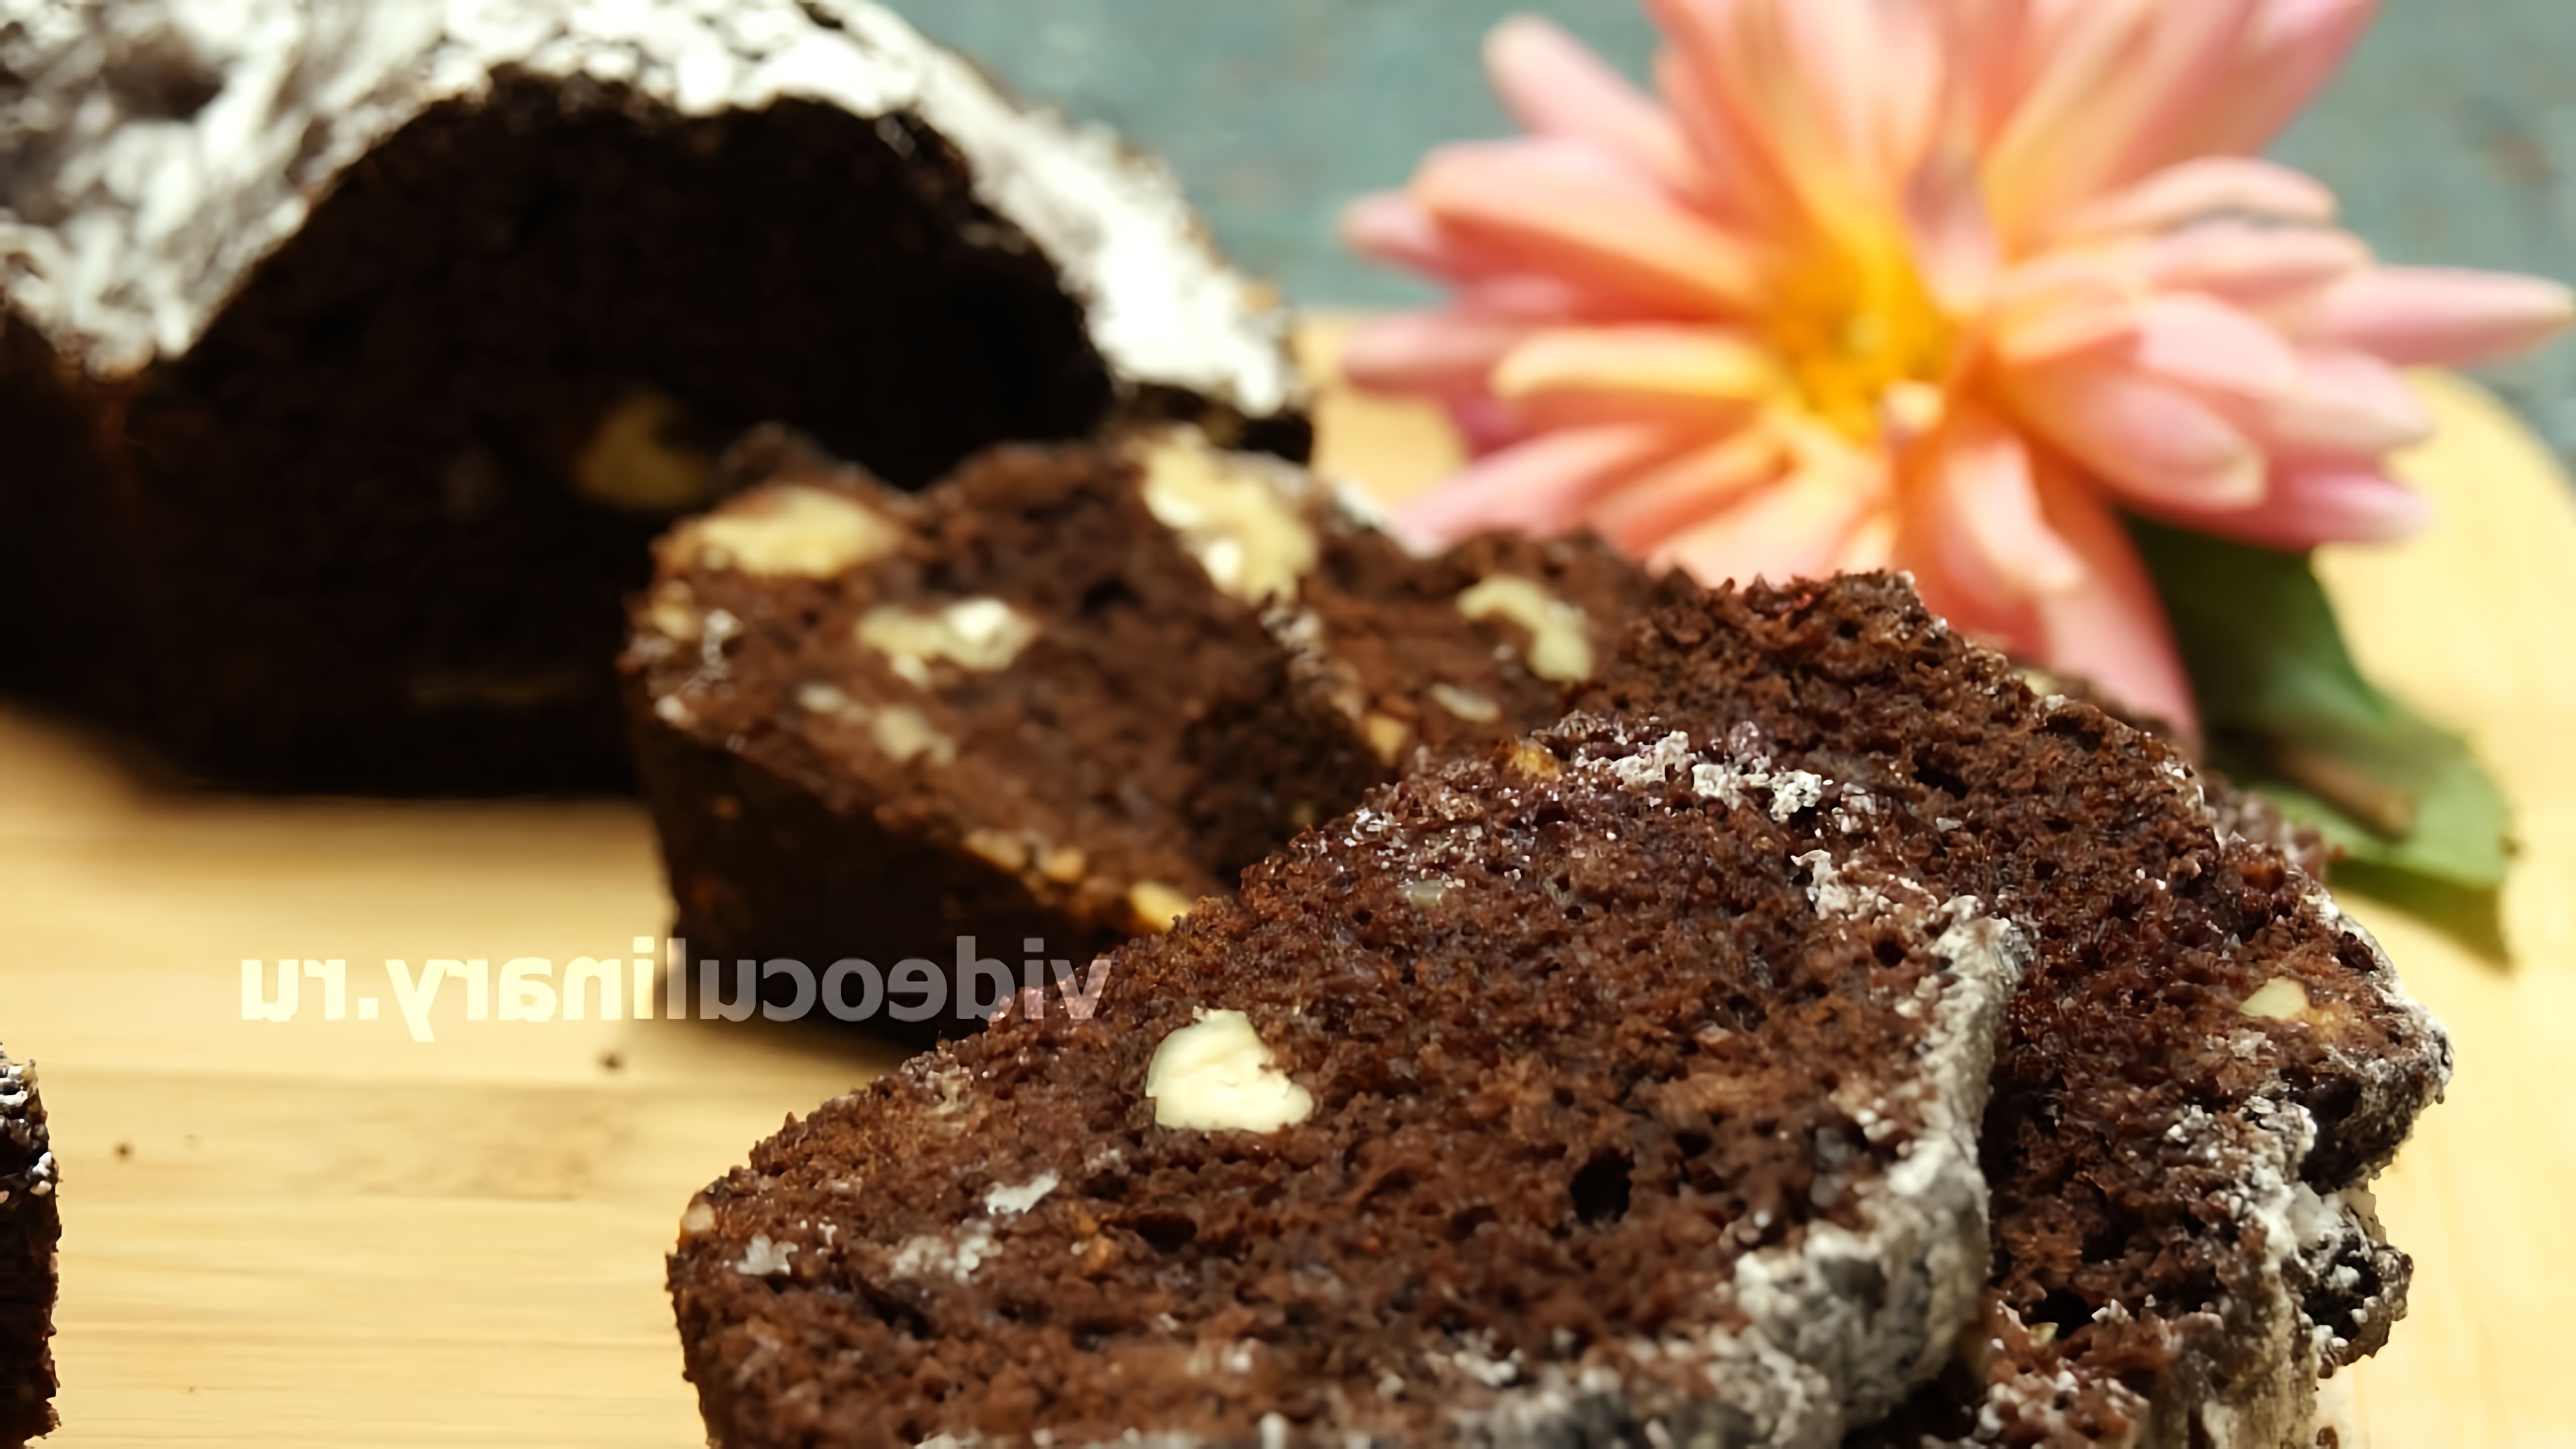 В этом видео демонстрируется рецепт шоколадного кекса от Бабушки Эммы